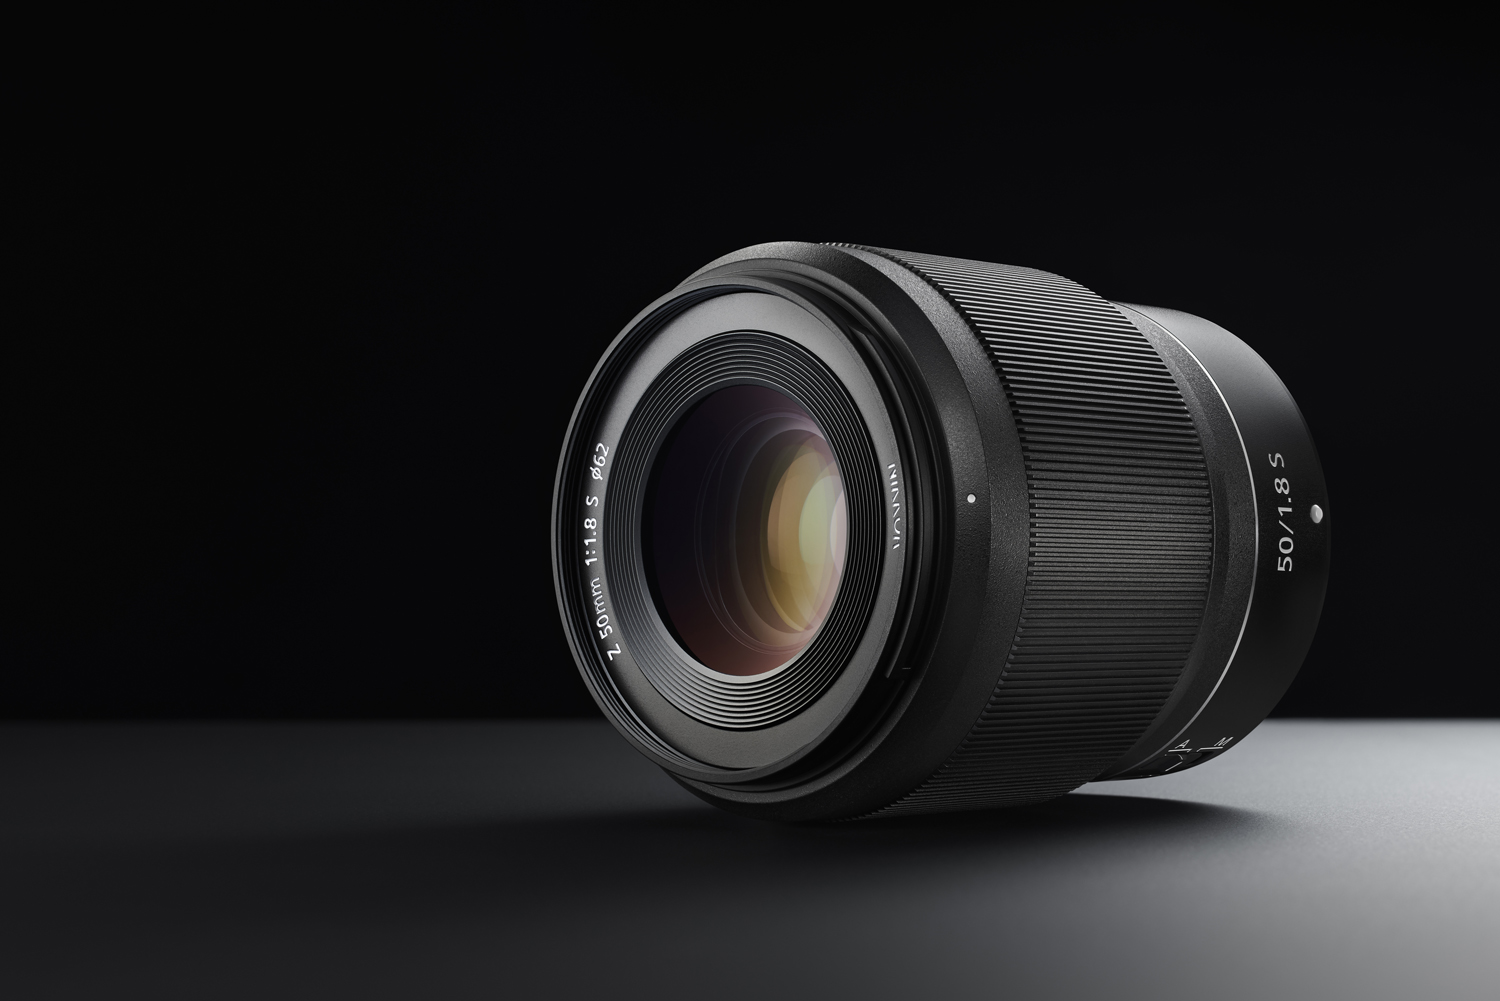 The Nikkor Z 50 mm 1:1.8 S lens.